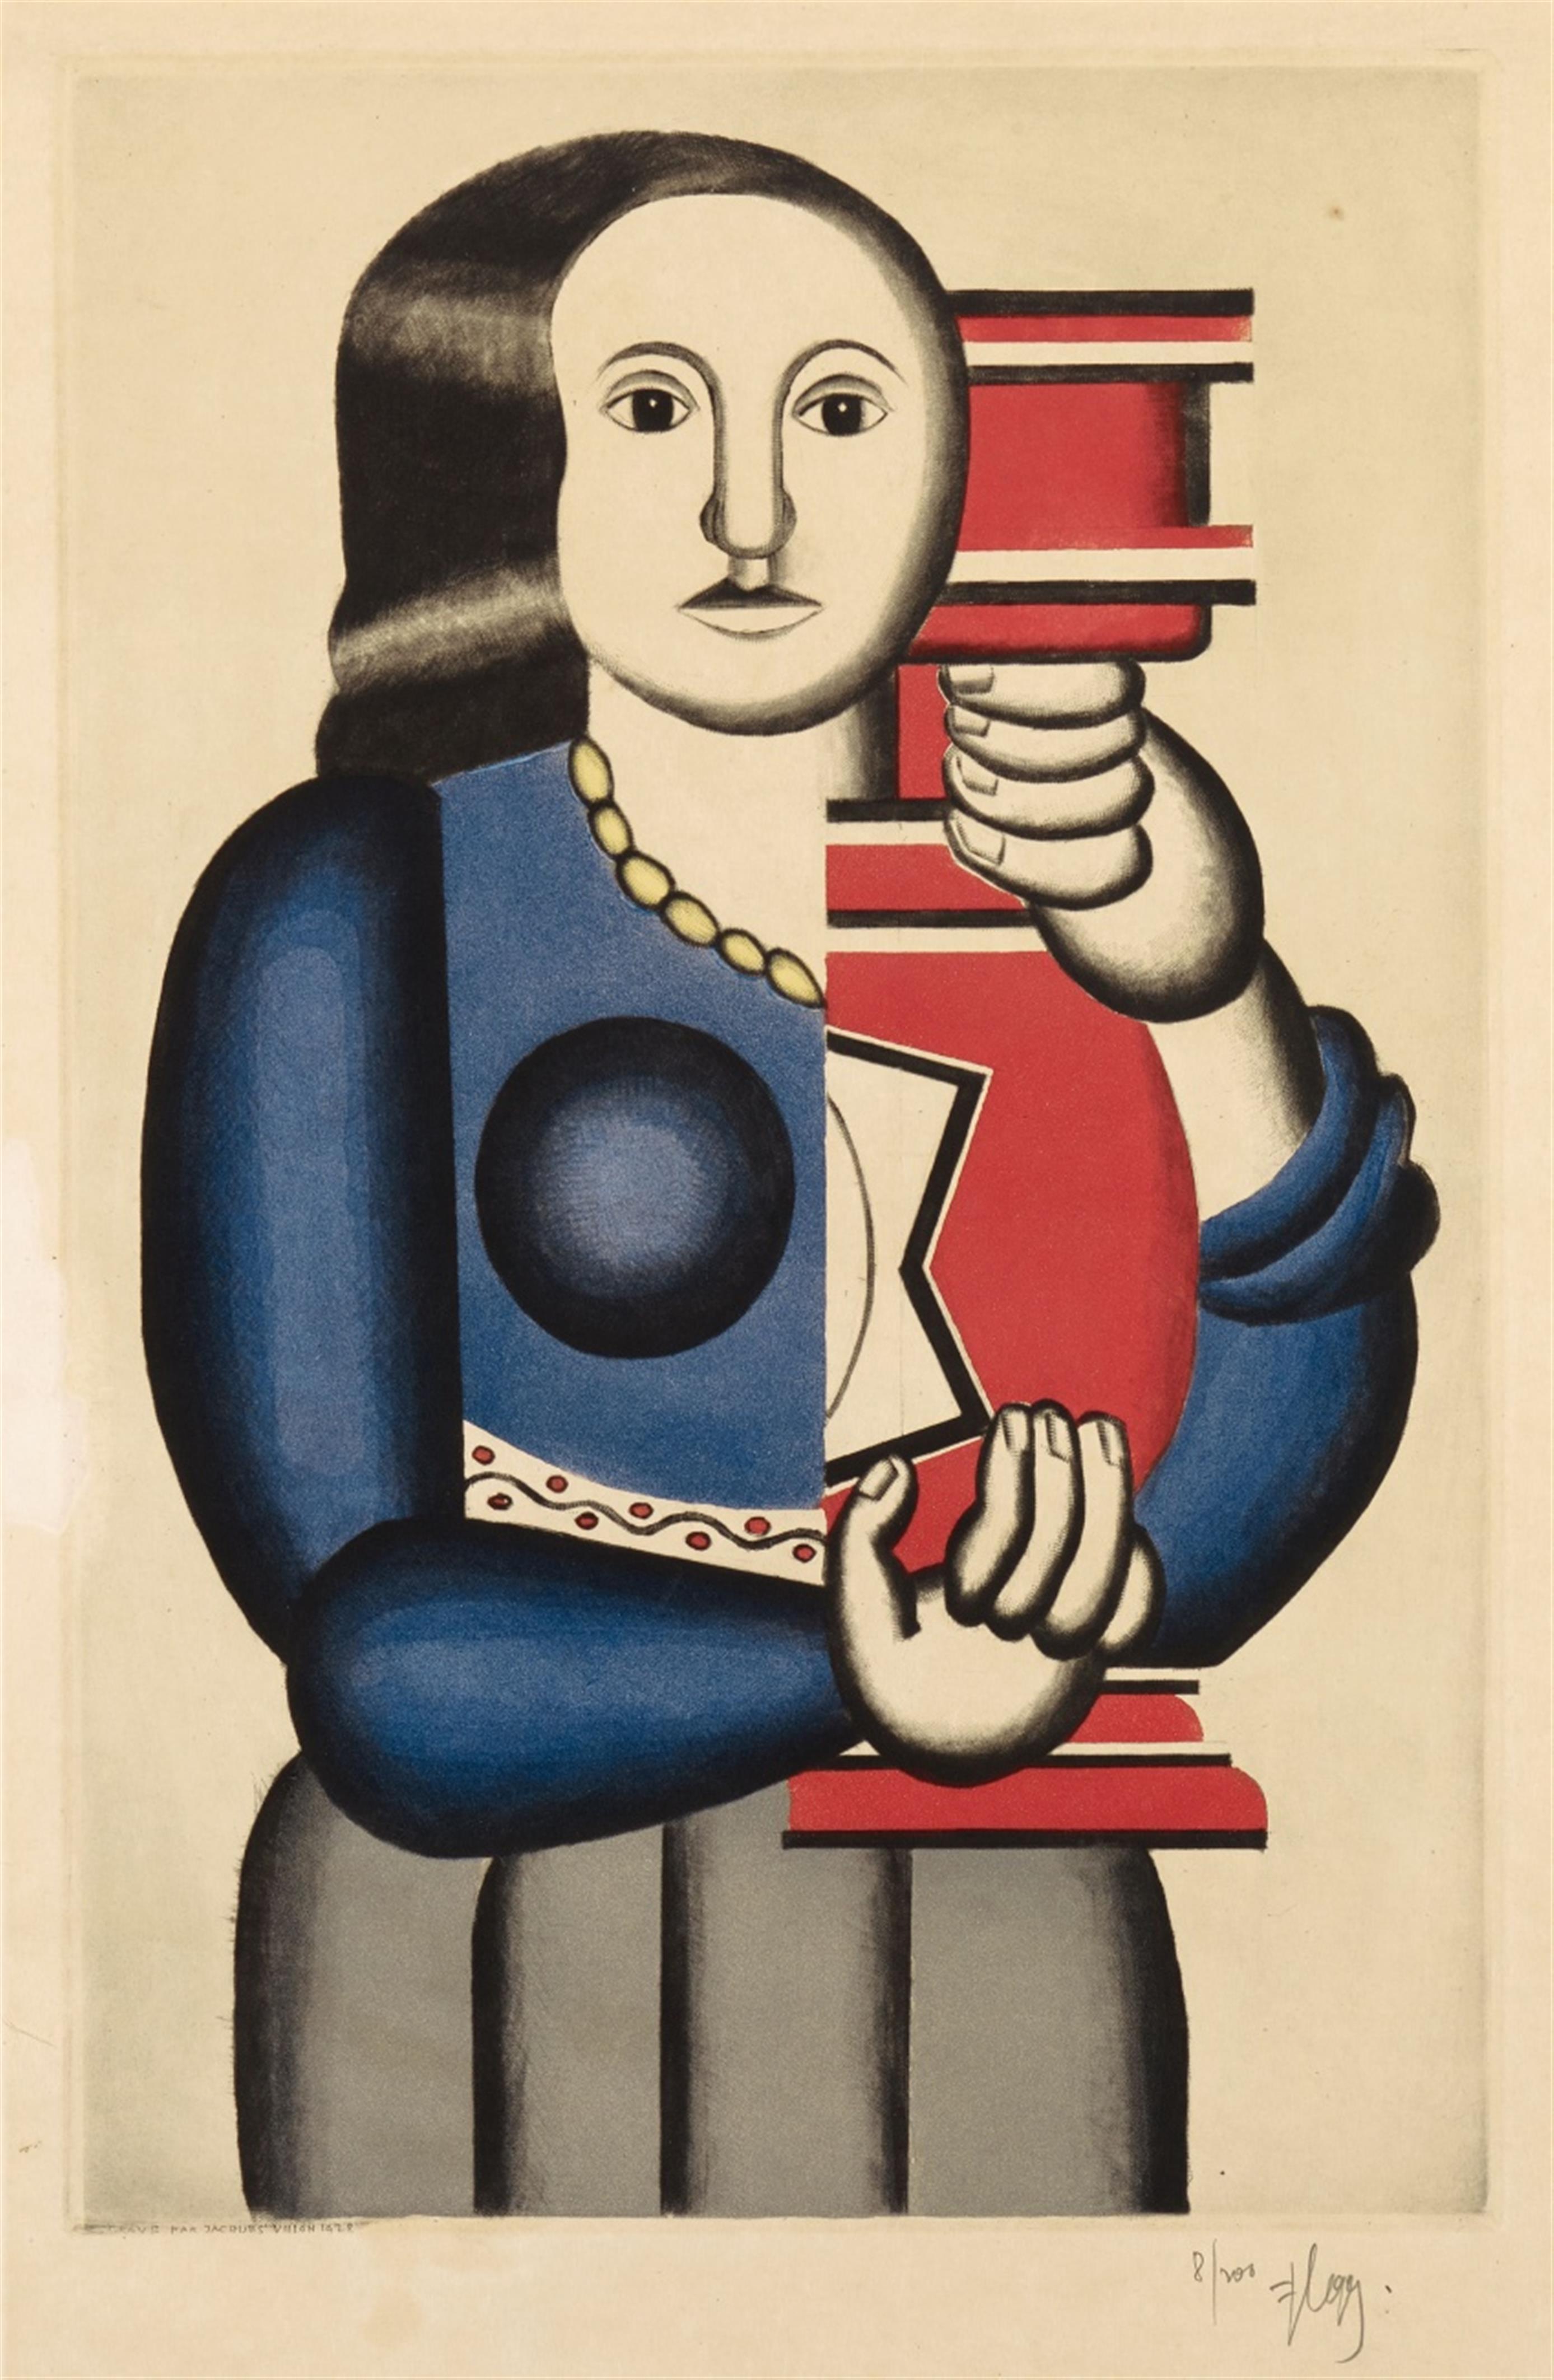 Jacques (Gaston Duchamp) Villon
Nach Fernand Léger - Femme à la cruche - image-1